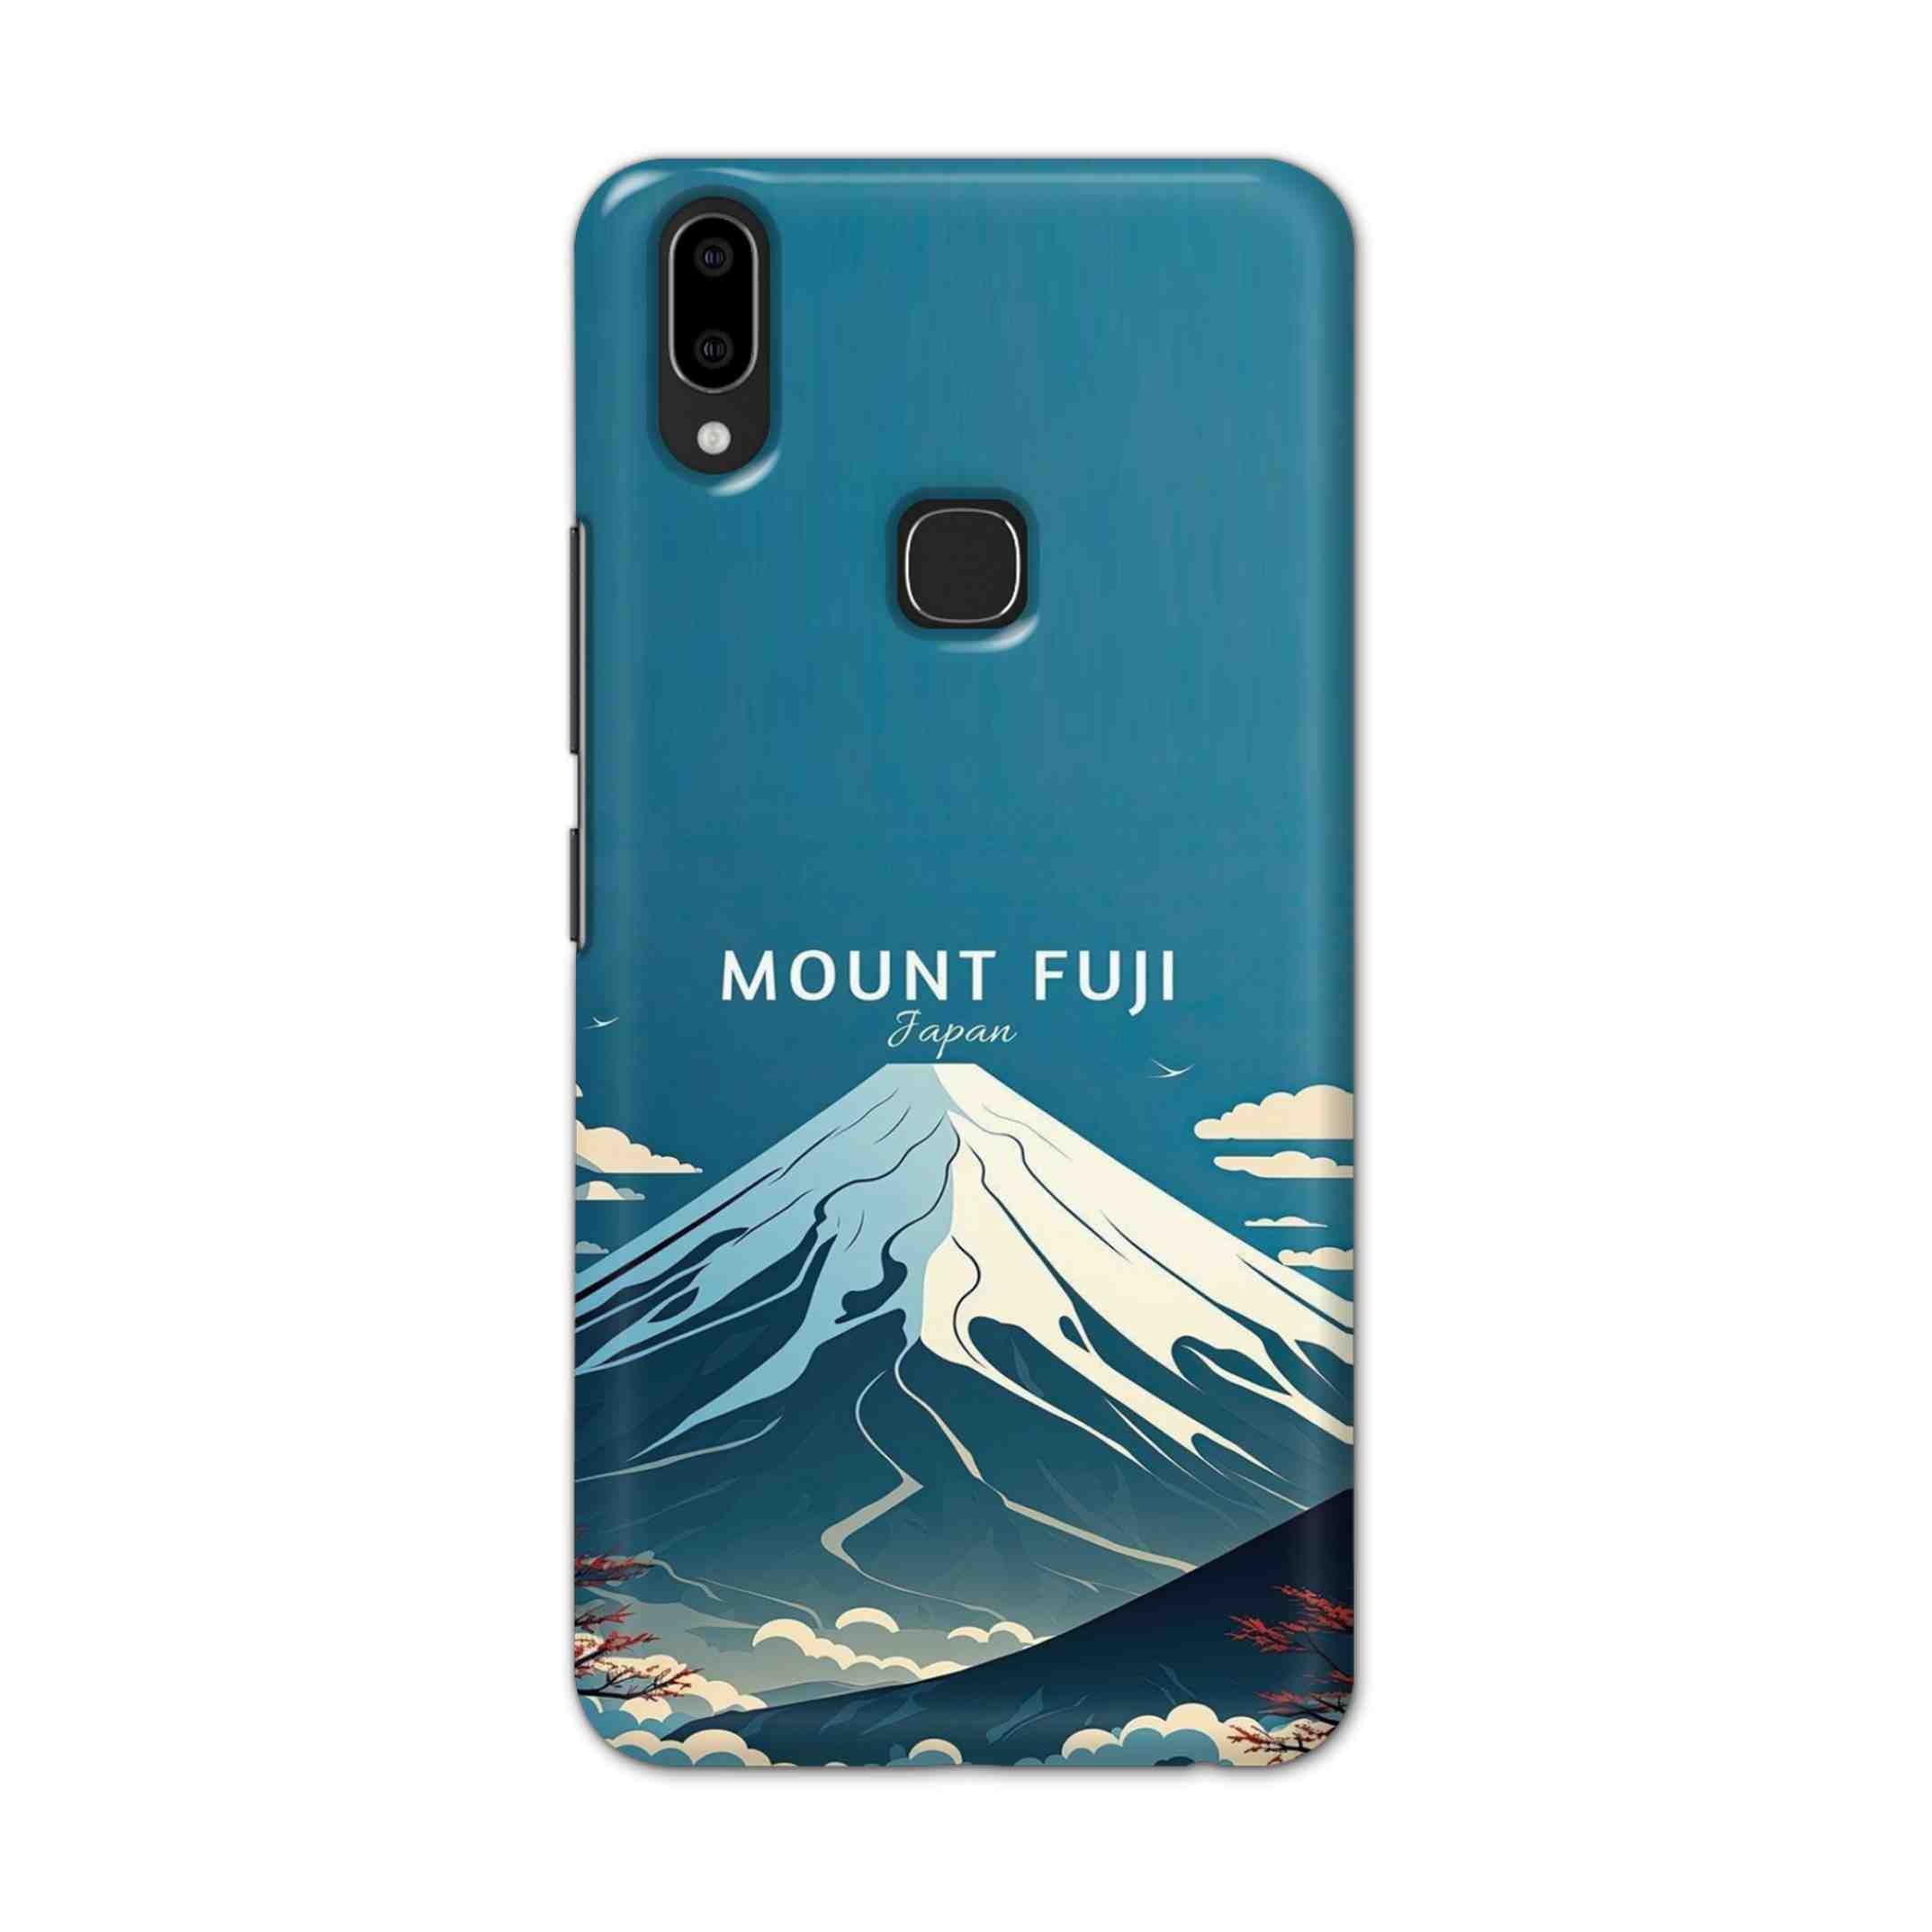 Buy Mount Fuji Hard Back Mobile Phone Case Cover For Vivo V9 / V9 Youth Online